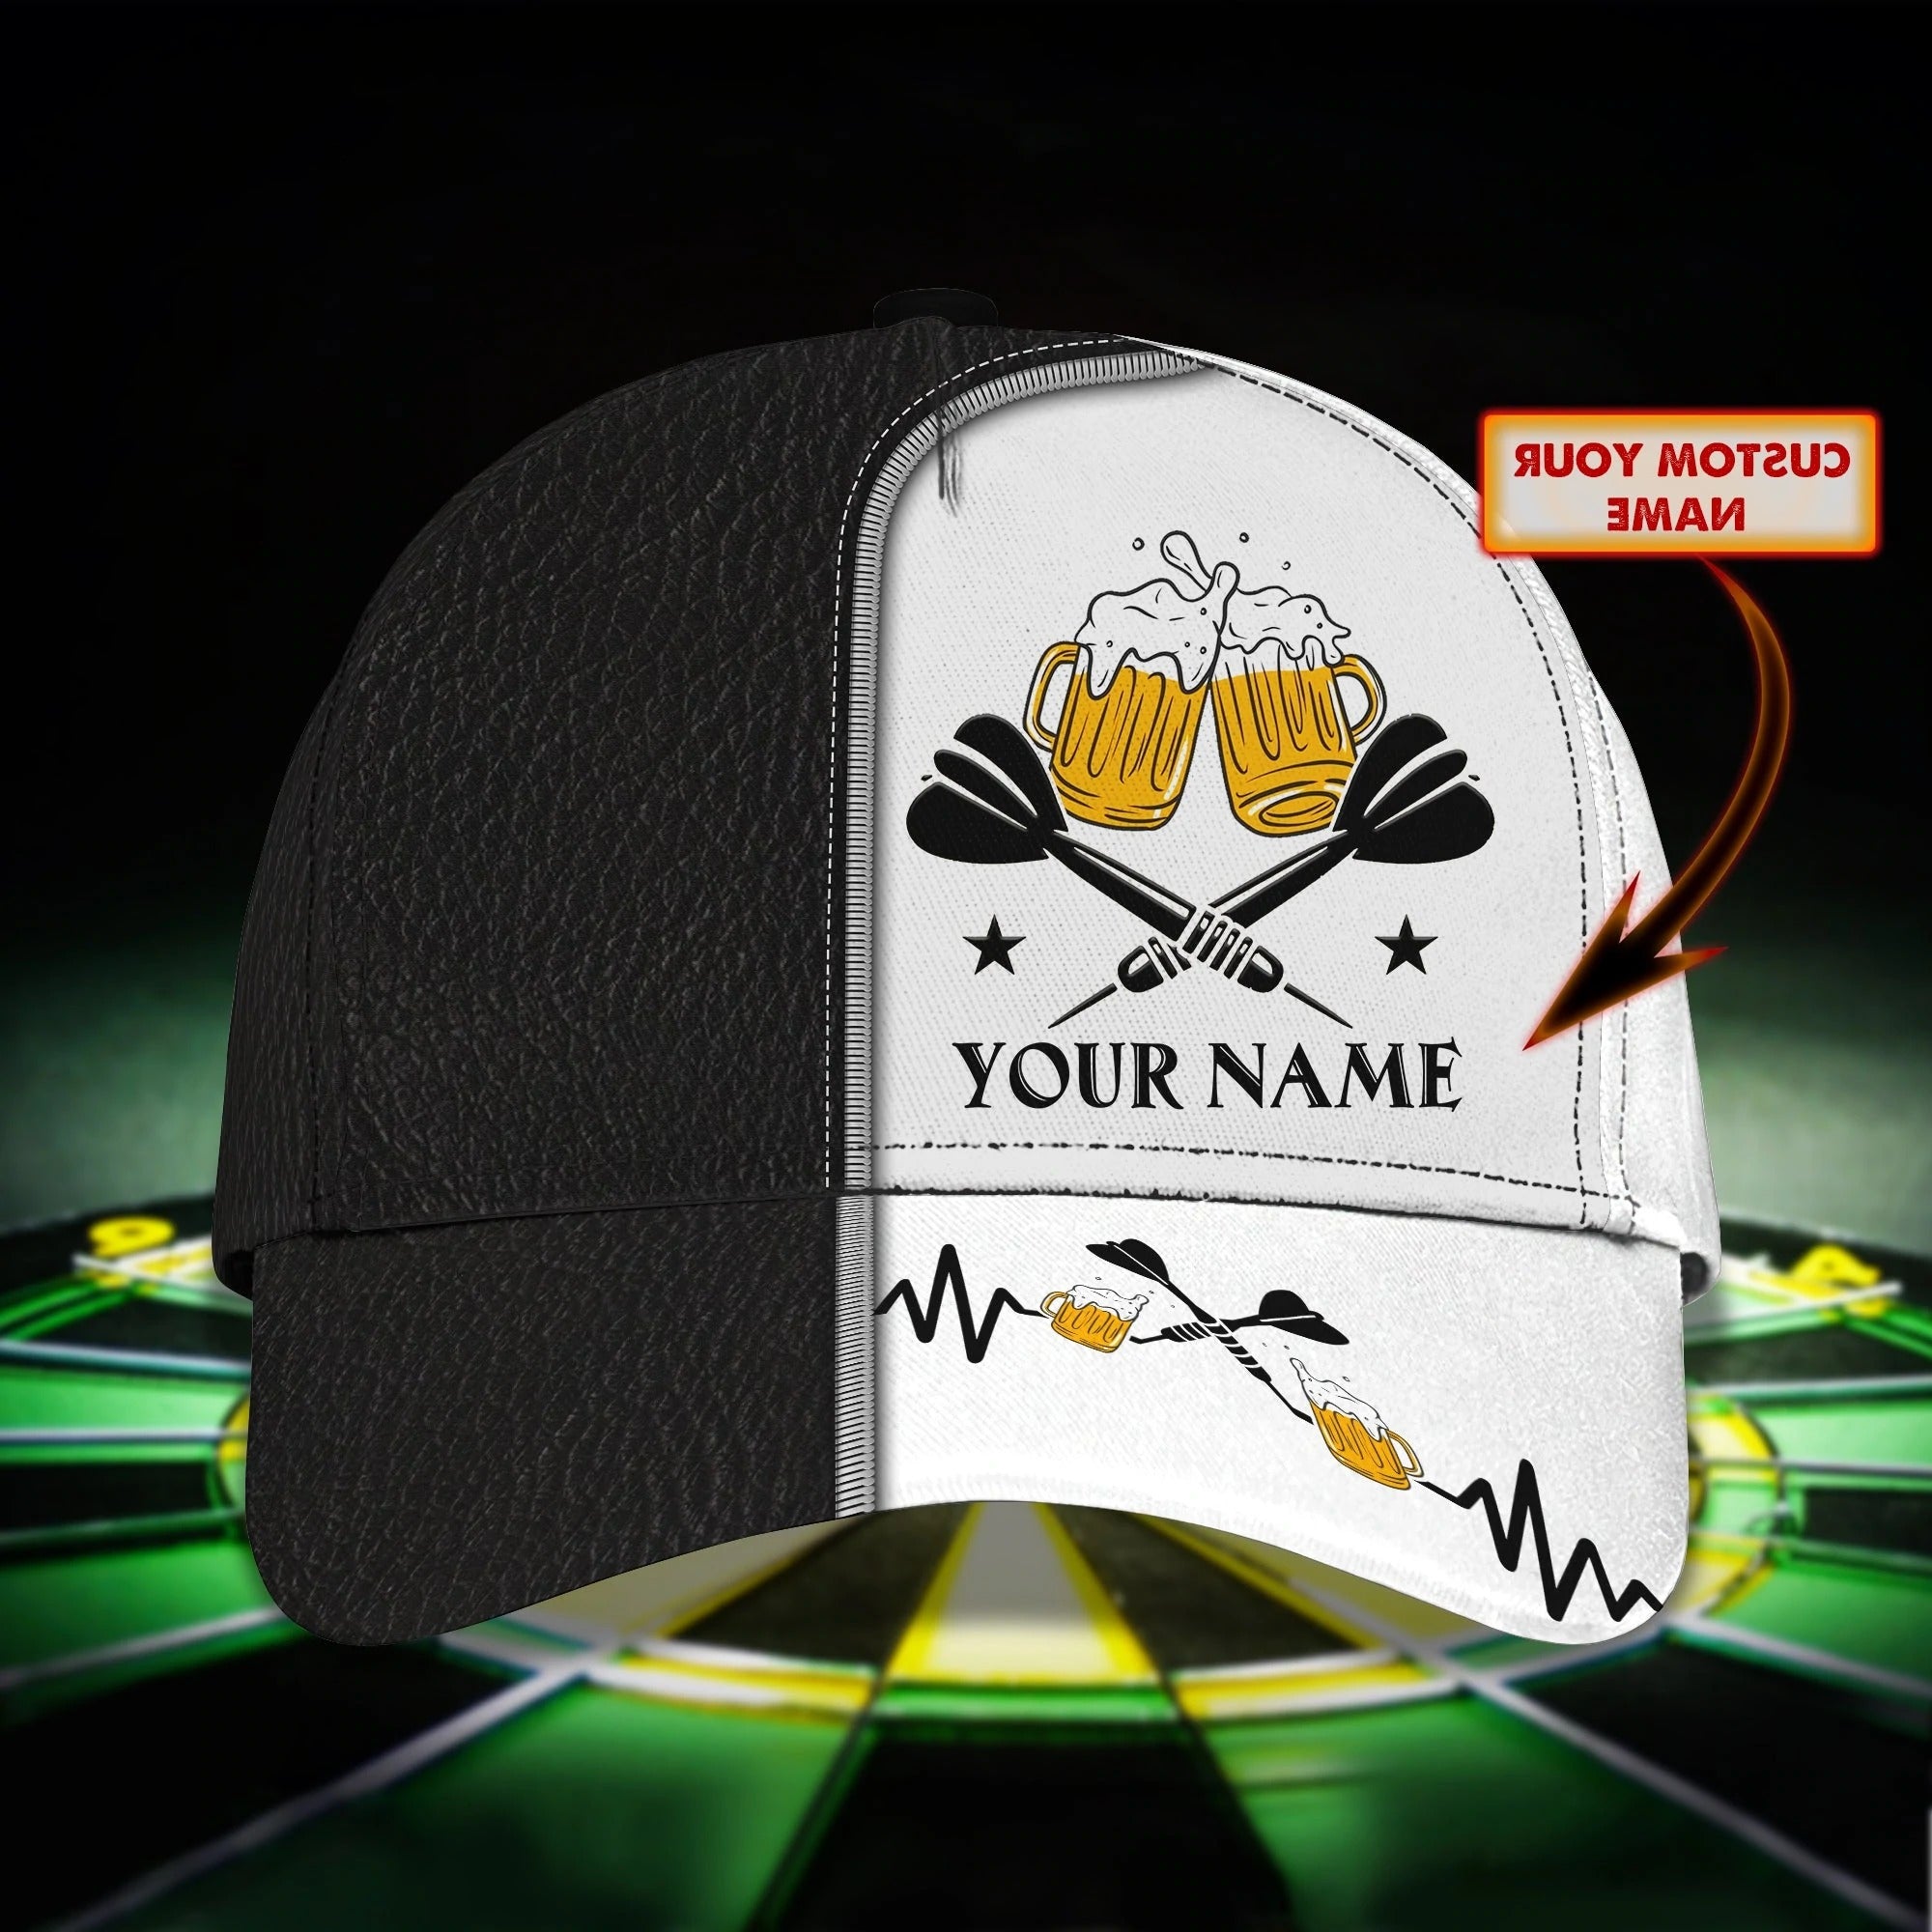 Personalized Dart Baseball Cap Full Printing/ Dart Hat For Men And Woman/ To My Friend Darter Cap Hat/ Darter Cap